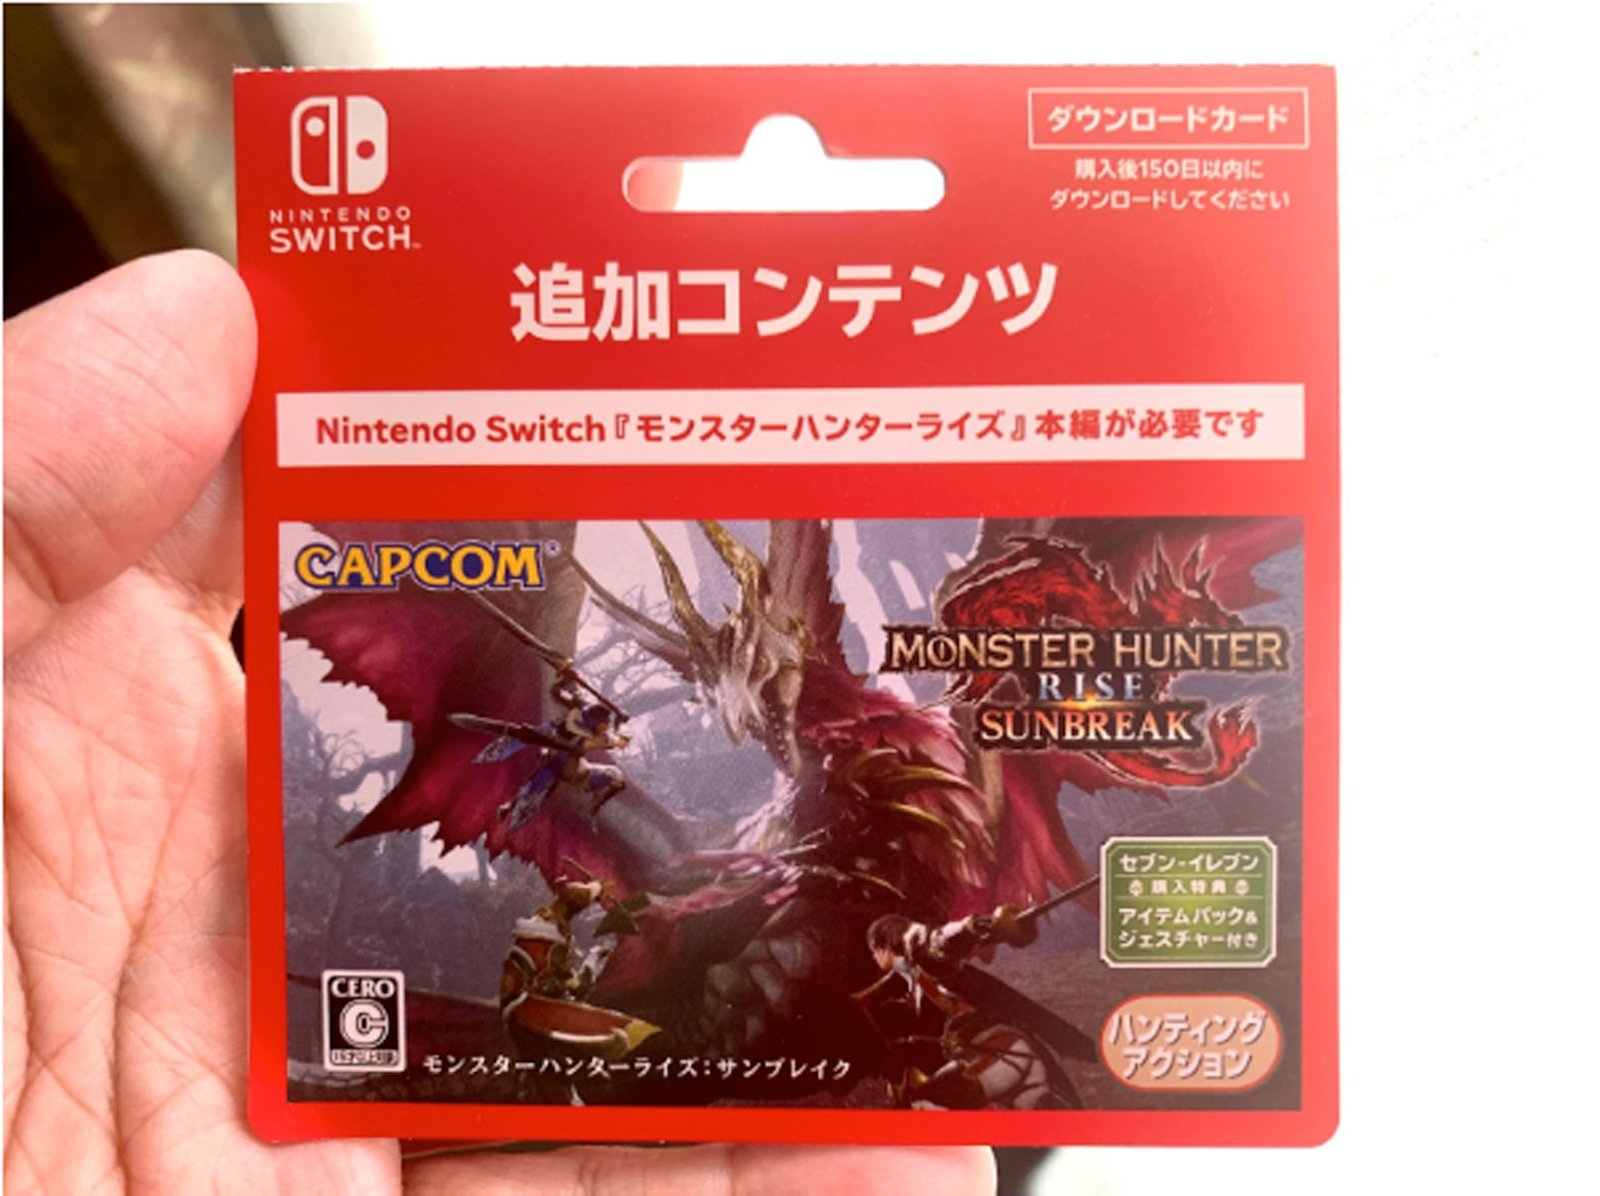 Nintendo Switch用『サンブレイク』のダウンロードカード。Nintendo Switch版は赤、Steam版は青とデザインを変えている